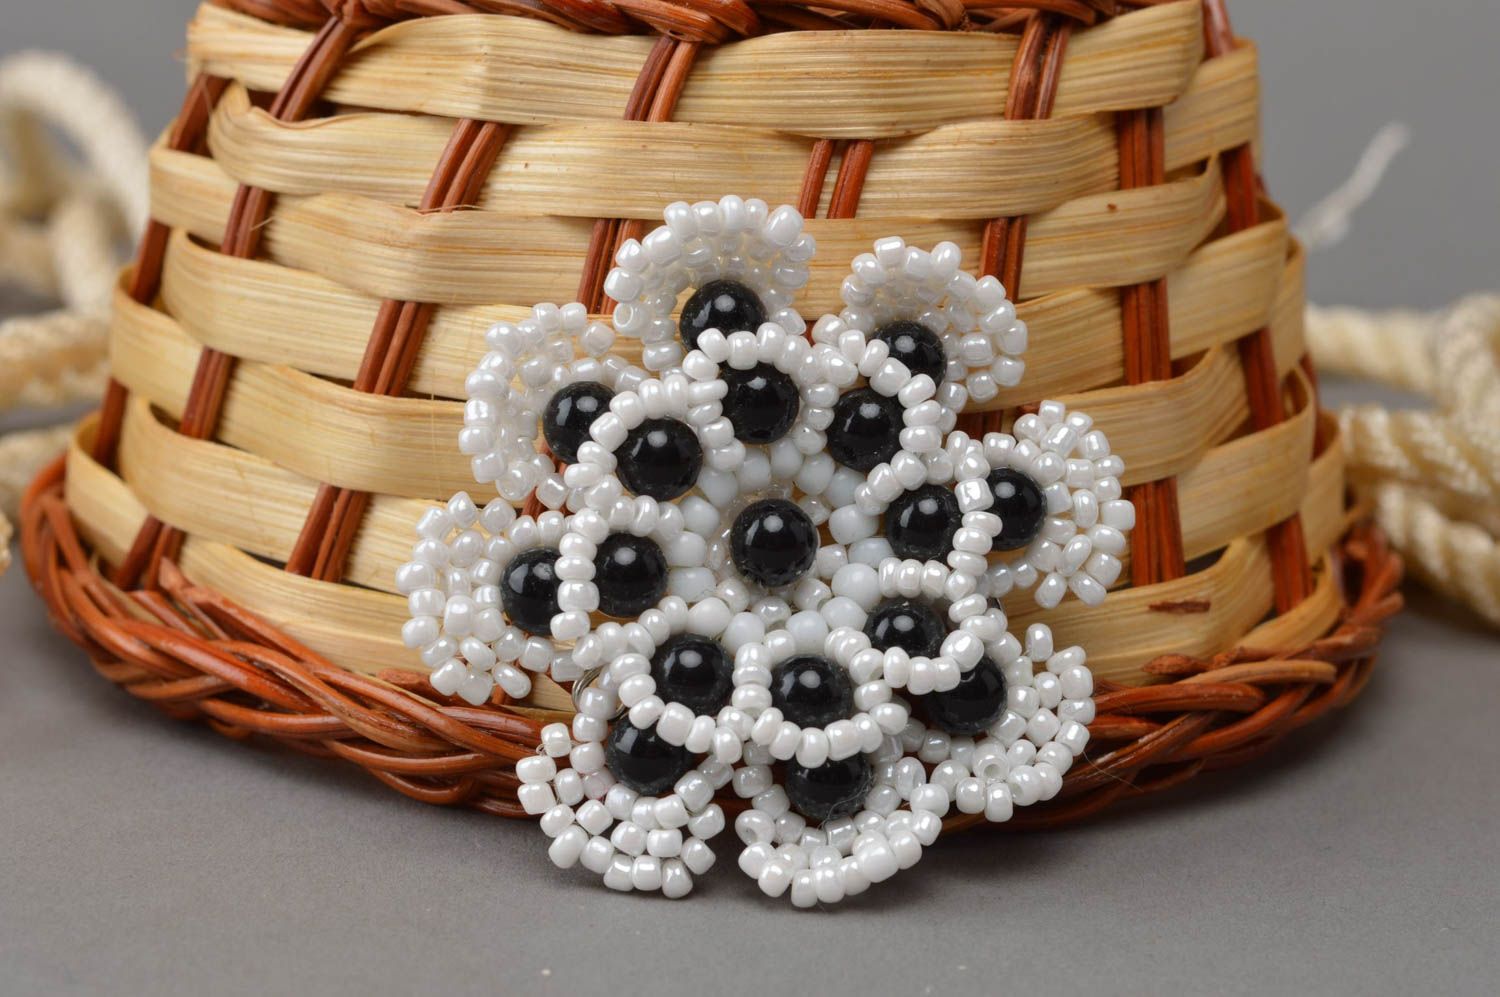 Брошь цветок из бисера белая с черными бусинами небольшая красивая ручная работа фото 1